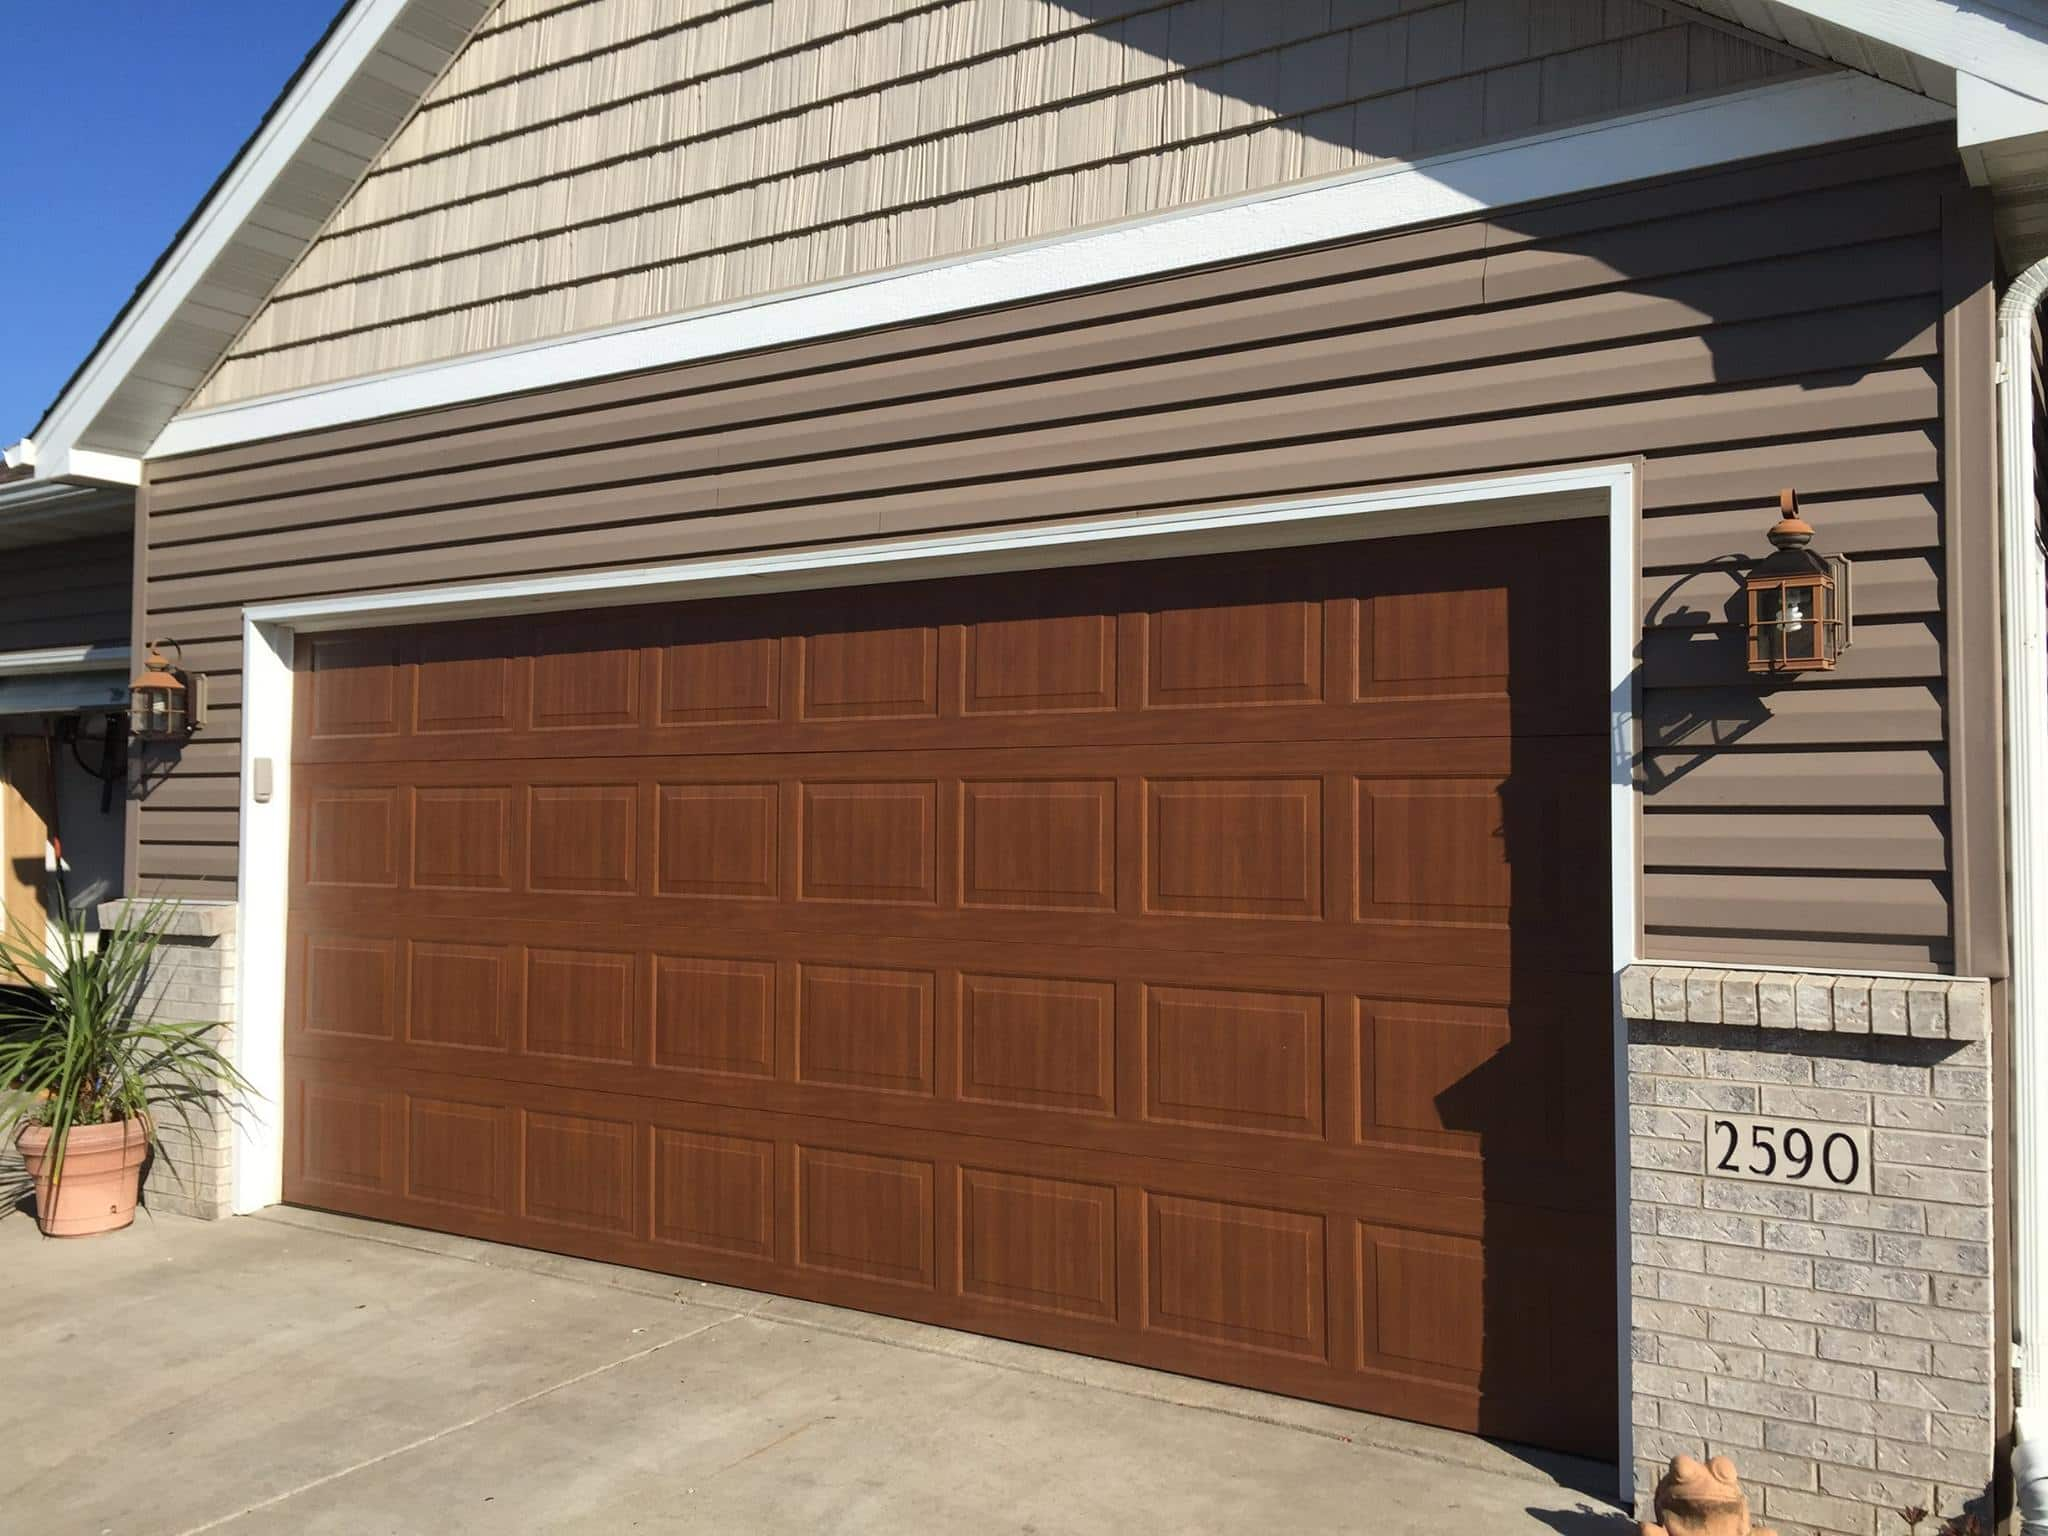 Overhead Doors For Business Garage Doors For Home Overhead Door in measurements 2048 X 1536